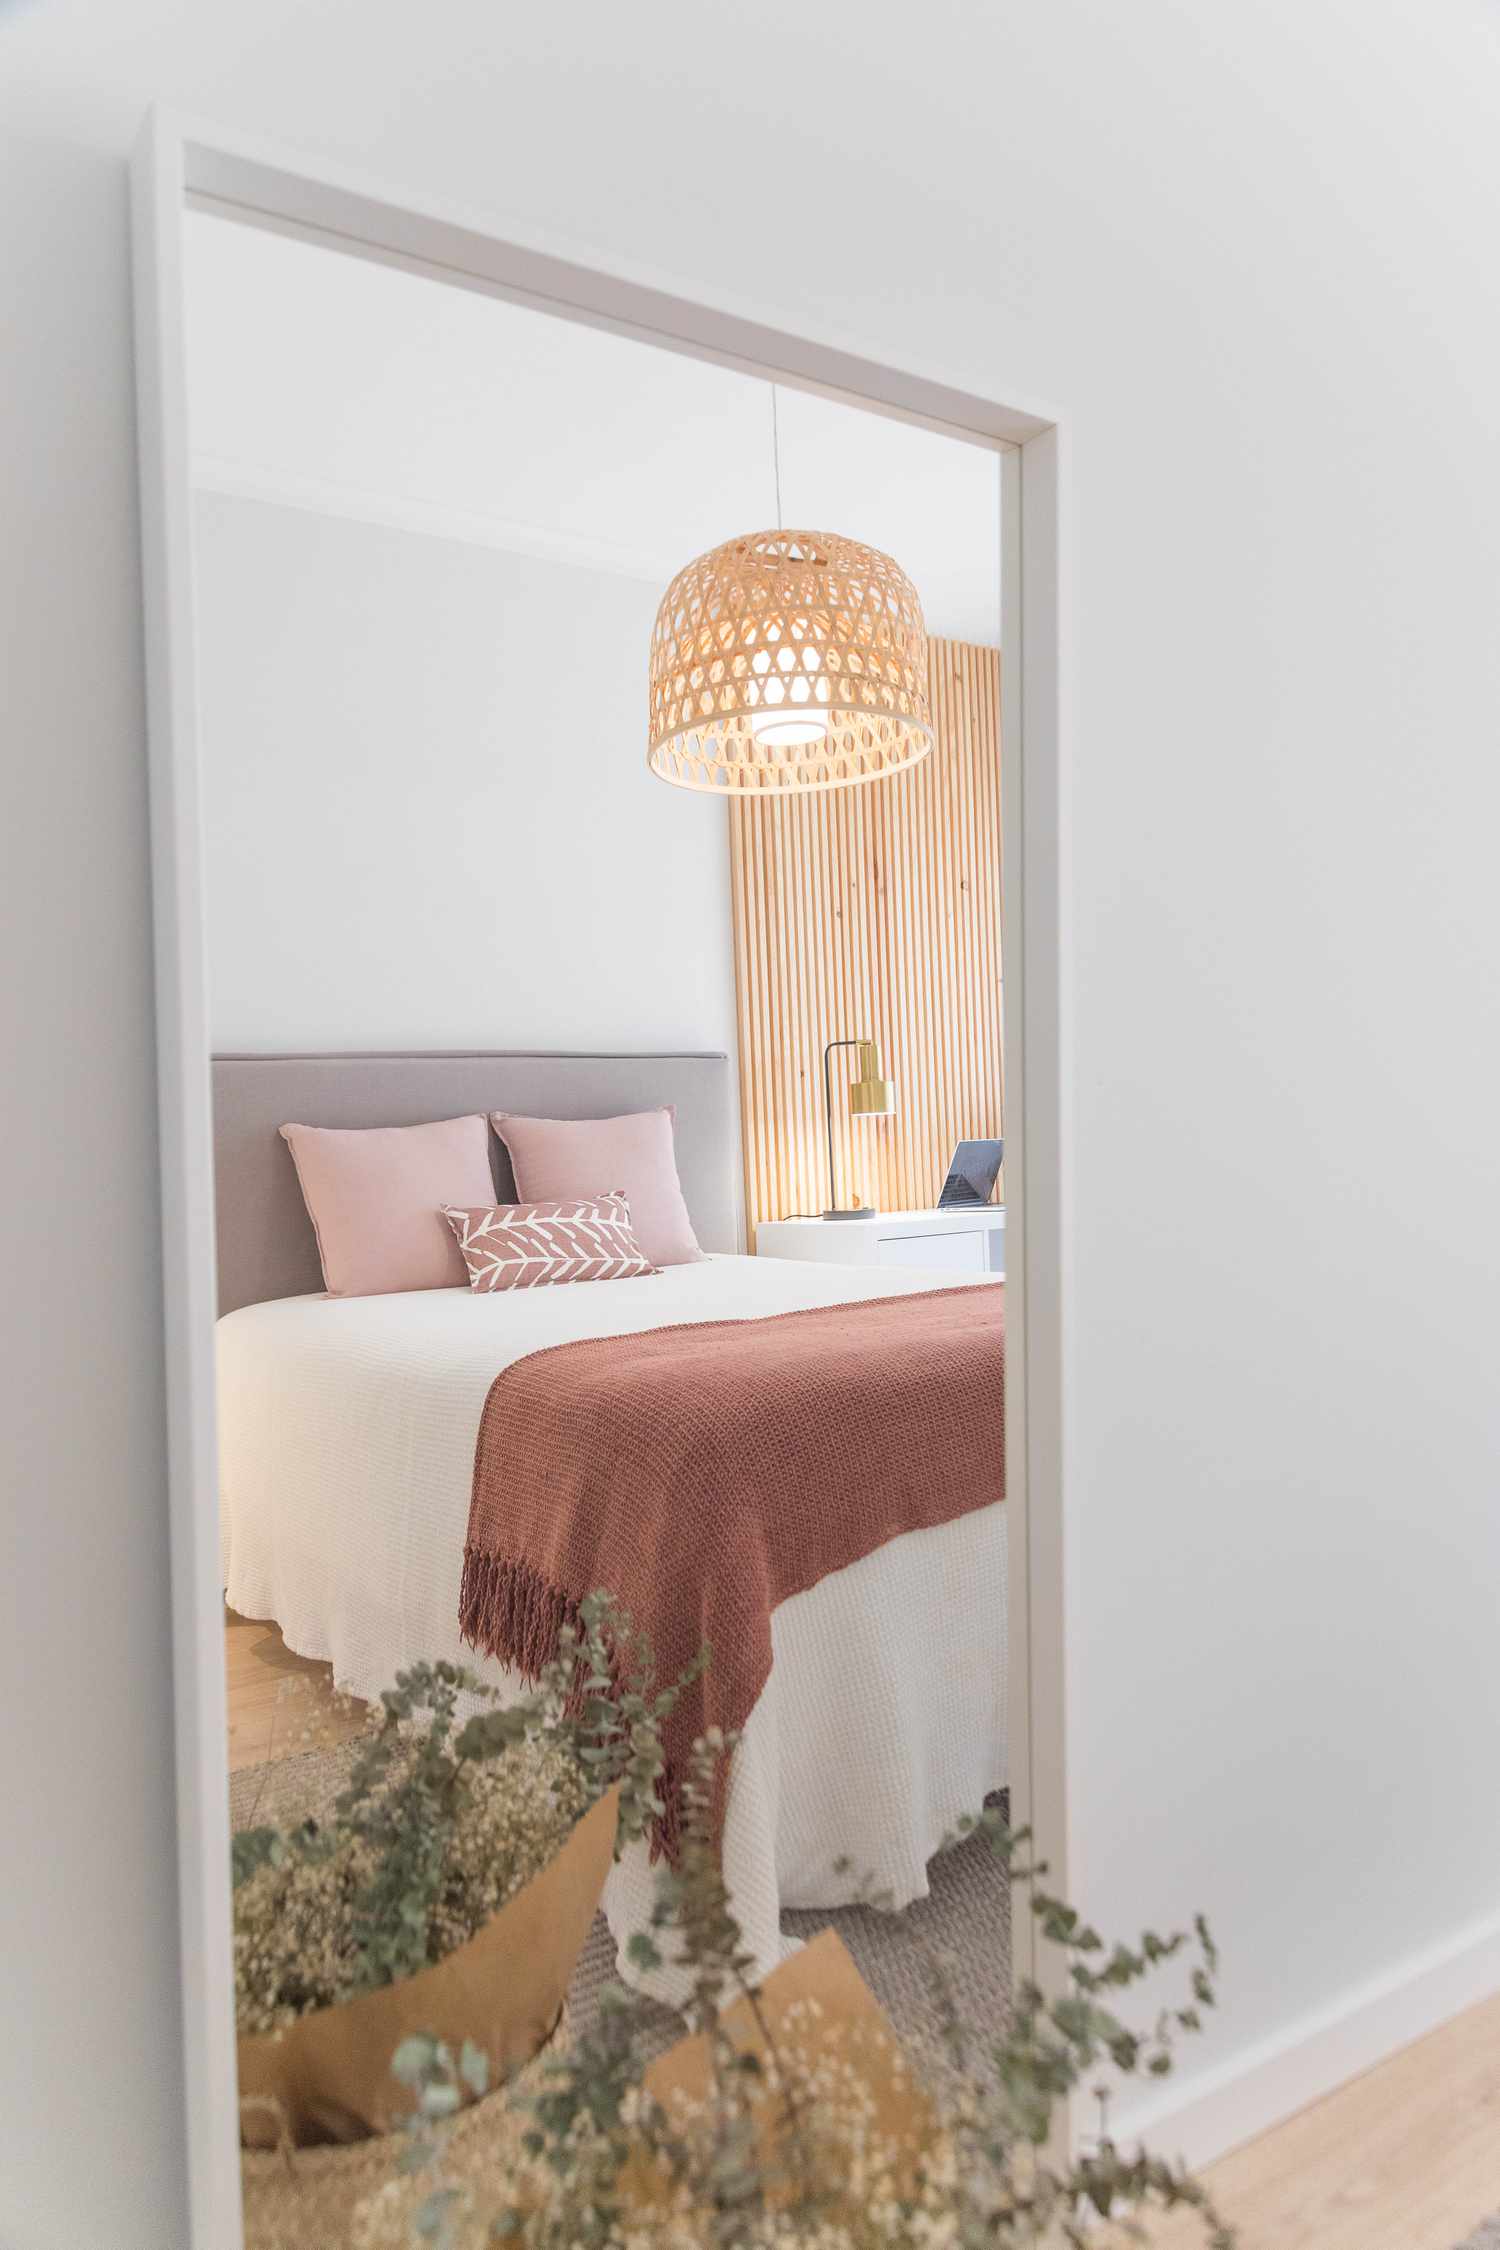 Espejo que muestra el reflejo de una cama con almohadas rosas y manta de color óxido